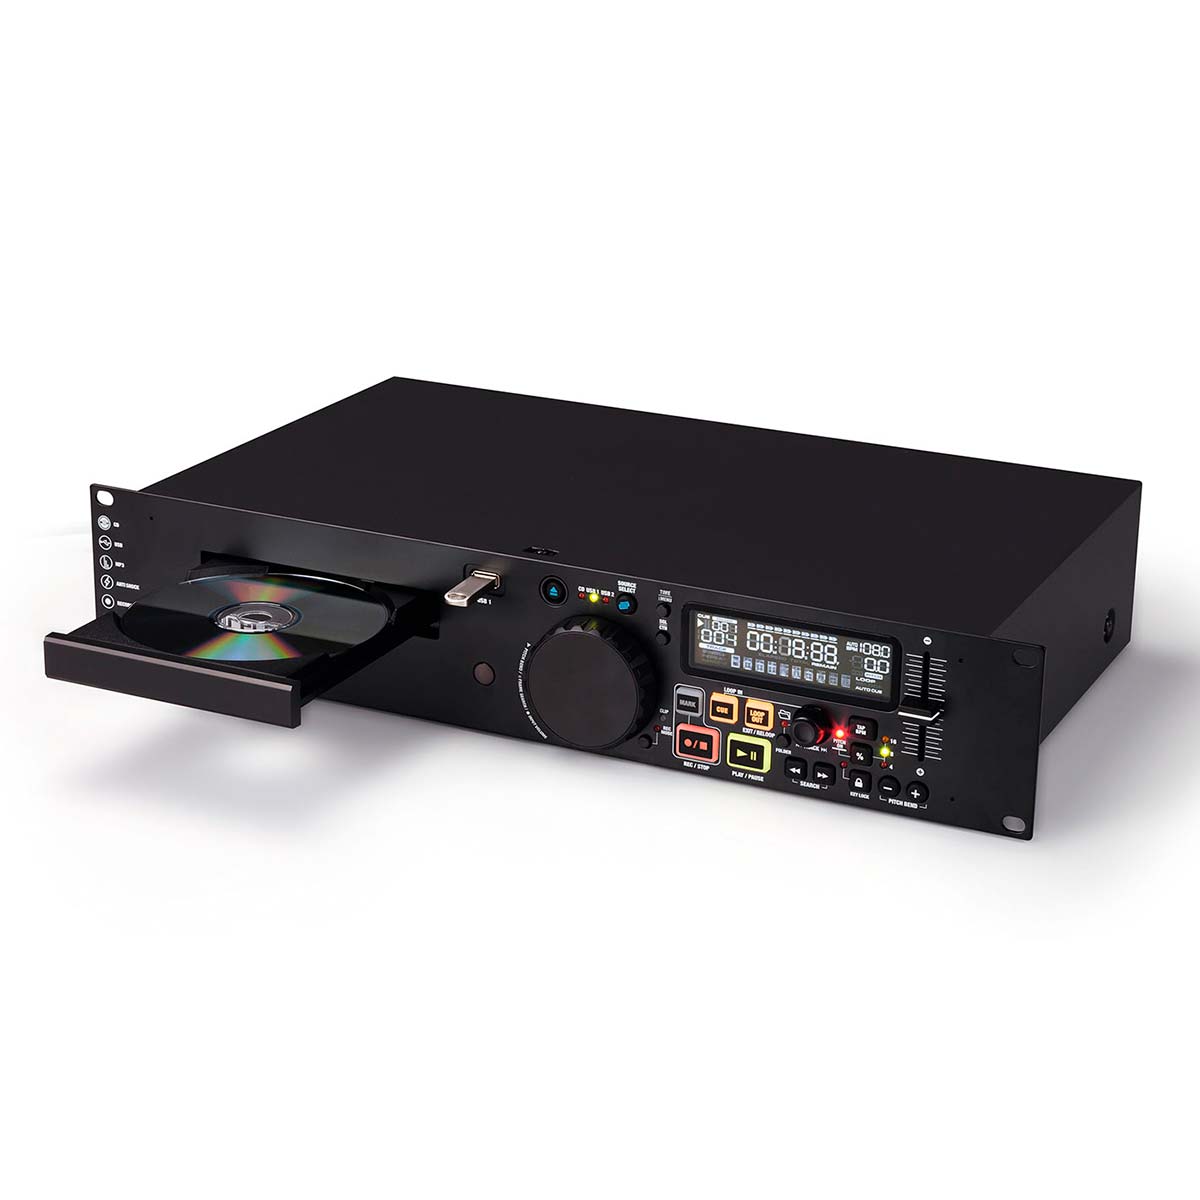 Reproductor CD multimedia Reloop RMP-1700 RX